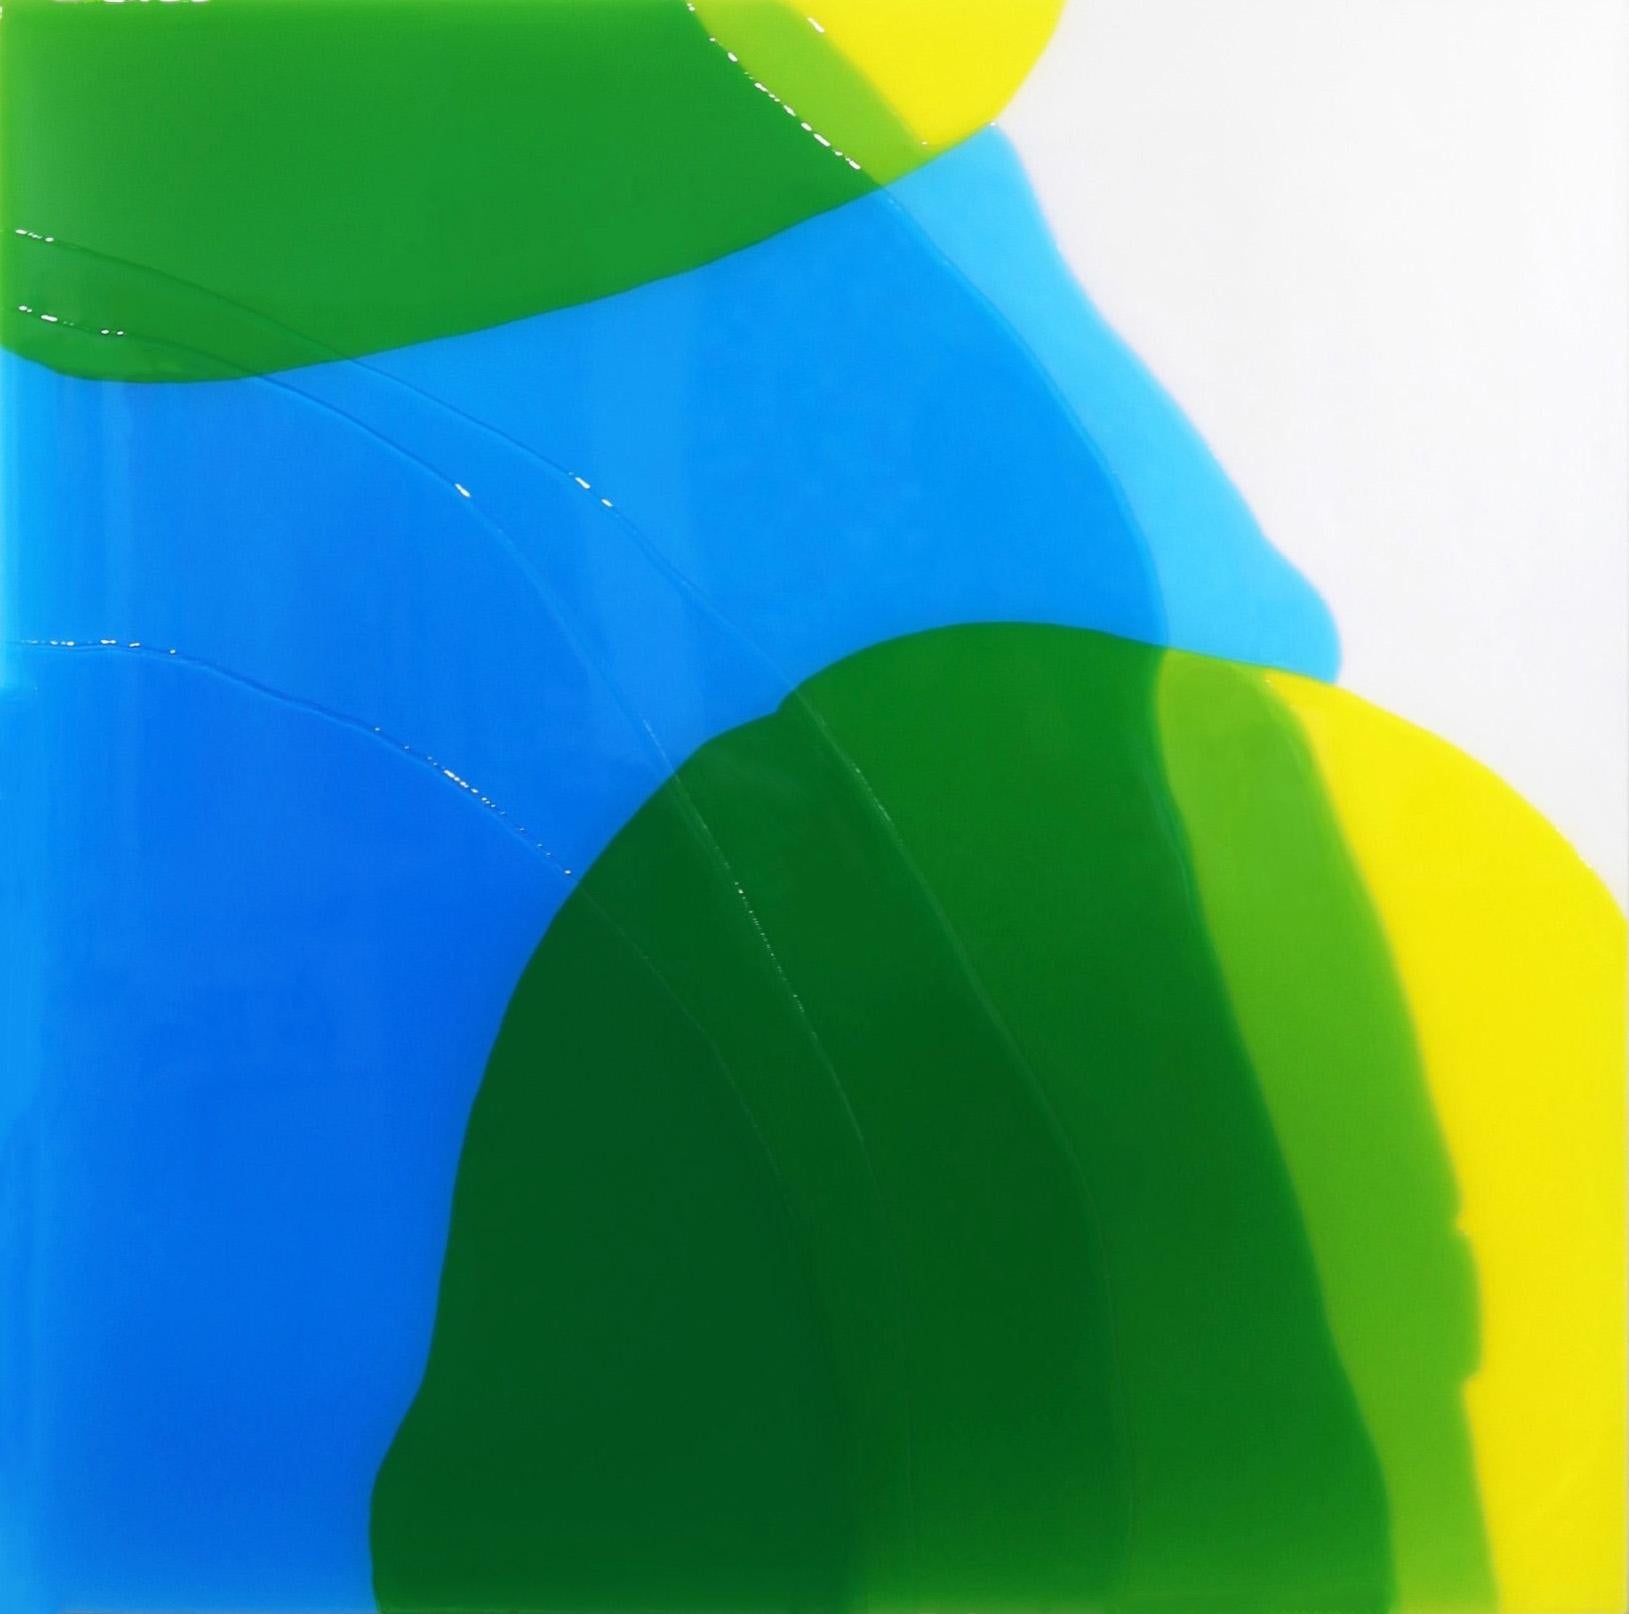 Atmosphärische Flow - Mehrschichtiges blaues und gelbes Harzkunstwerk